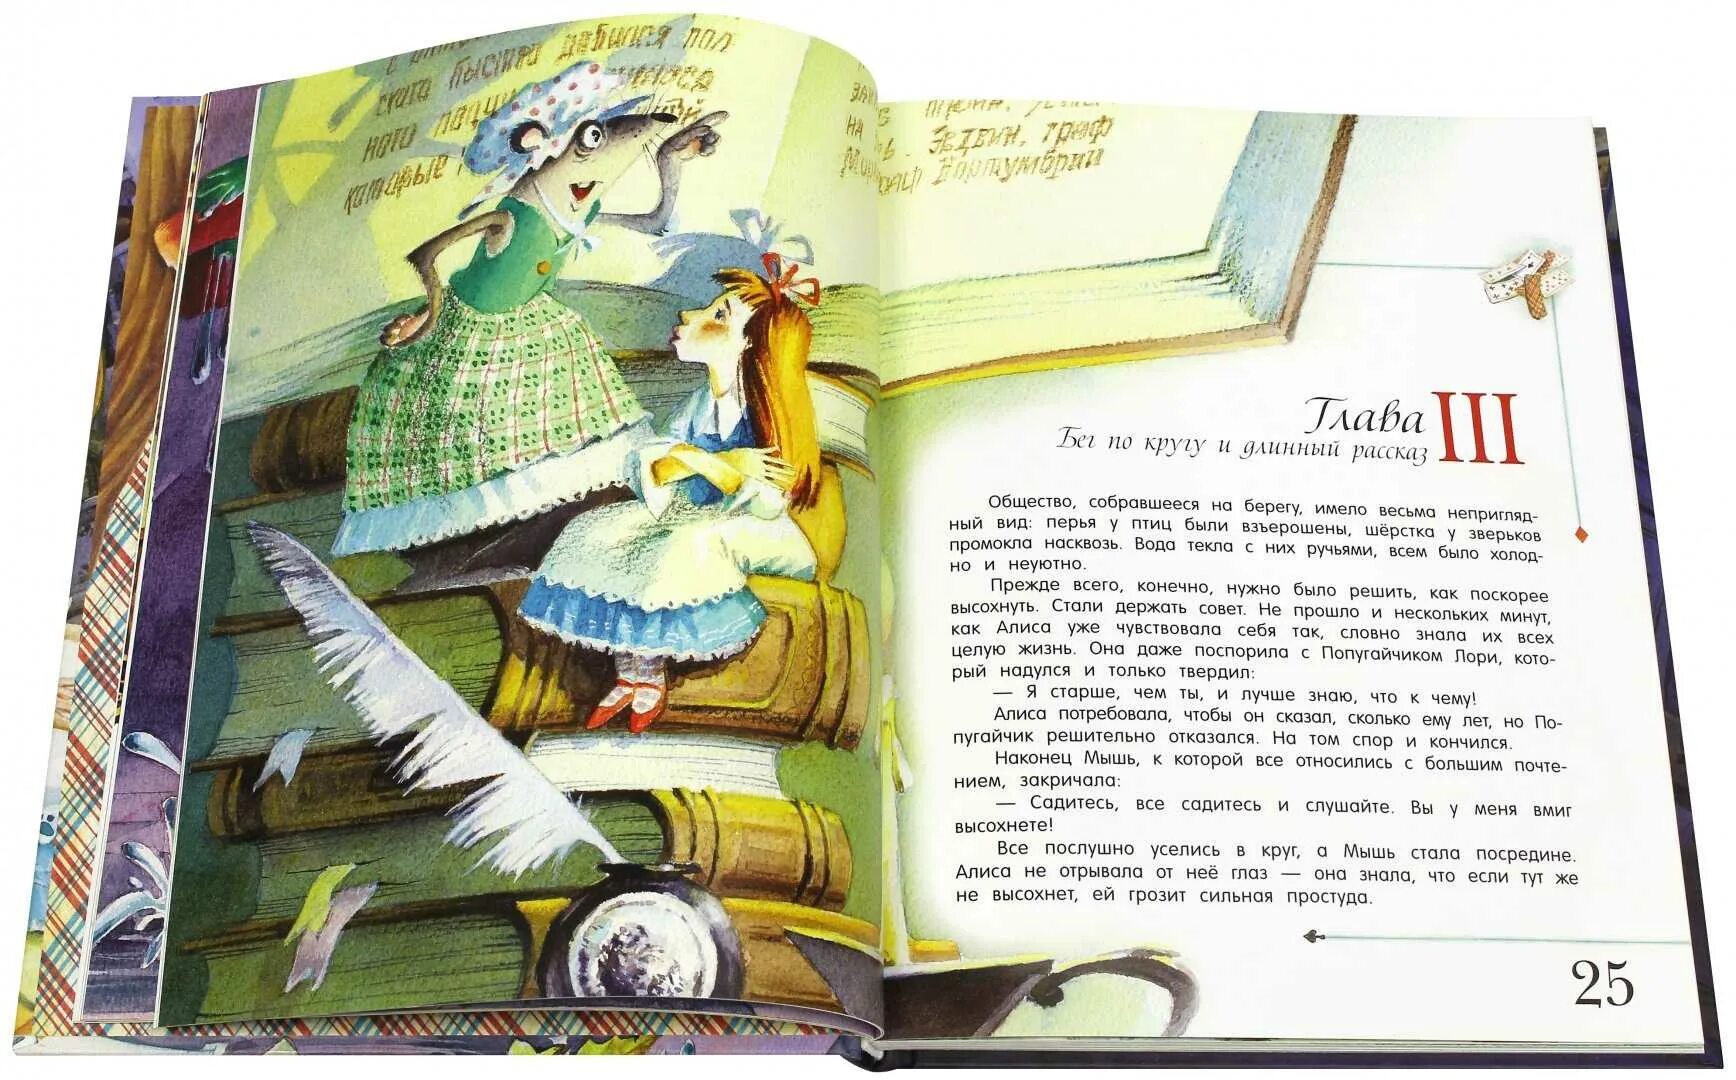 Алиса краткое содержание. Иллюстрация к книге л. Кэррола «Алиса в Зазеркалье». Алиса в стране чудес Льюис Кэрролл книга иллюстрации. 1. Алиса в стране чудес. (Льюис Кэрролл). Алиса в стране чудес иллюстрация книга Кэррол.